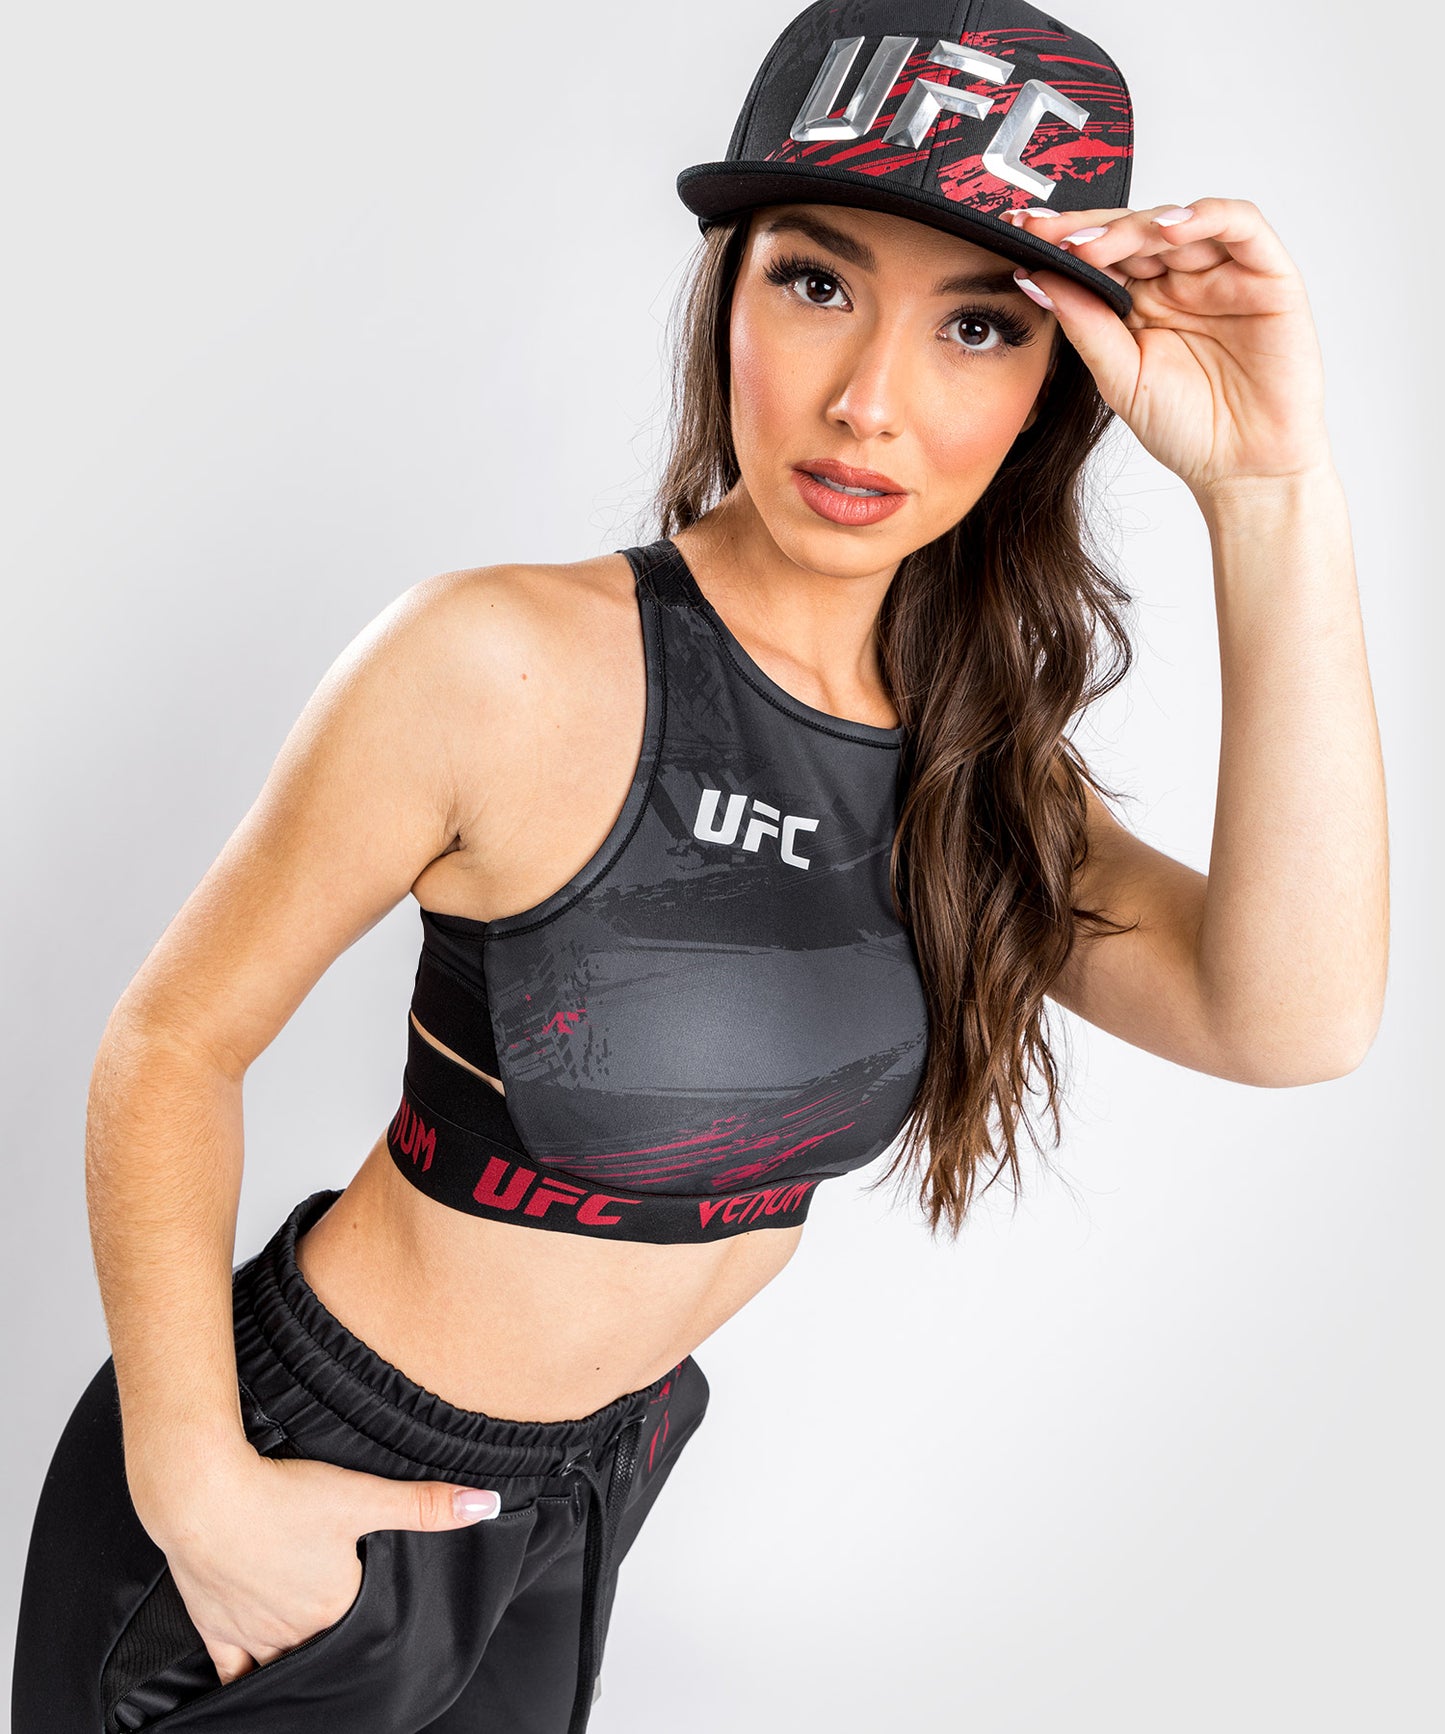 UFC Venum Authentic Fight Week 2.0 Women’s Weigh-in Bra - Black/Red